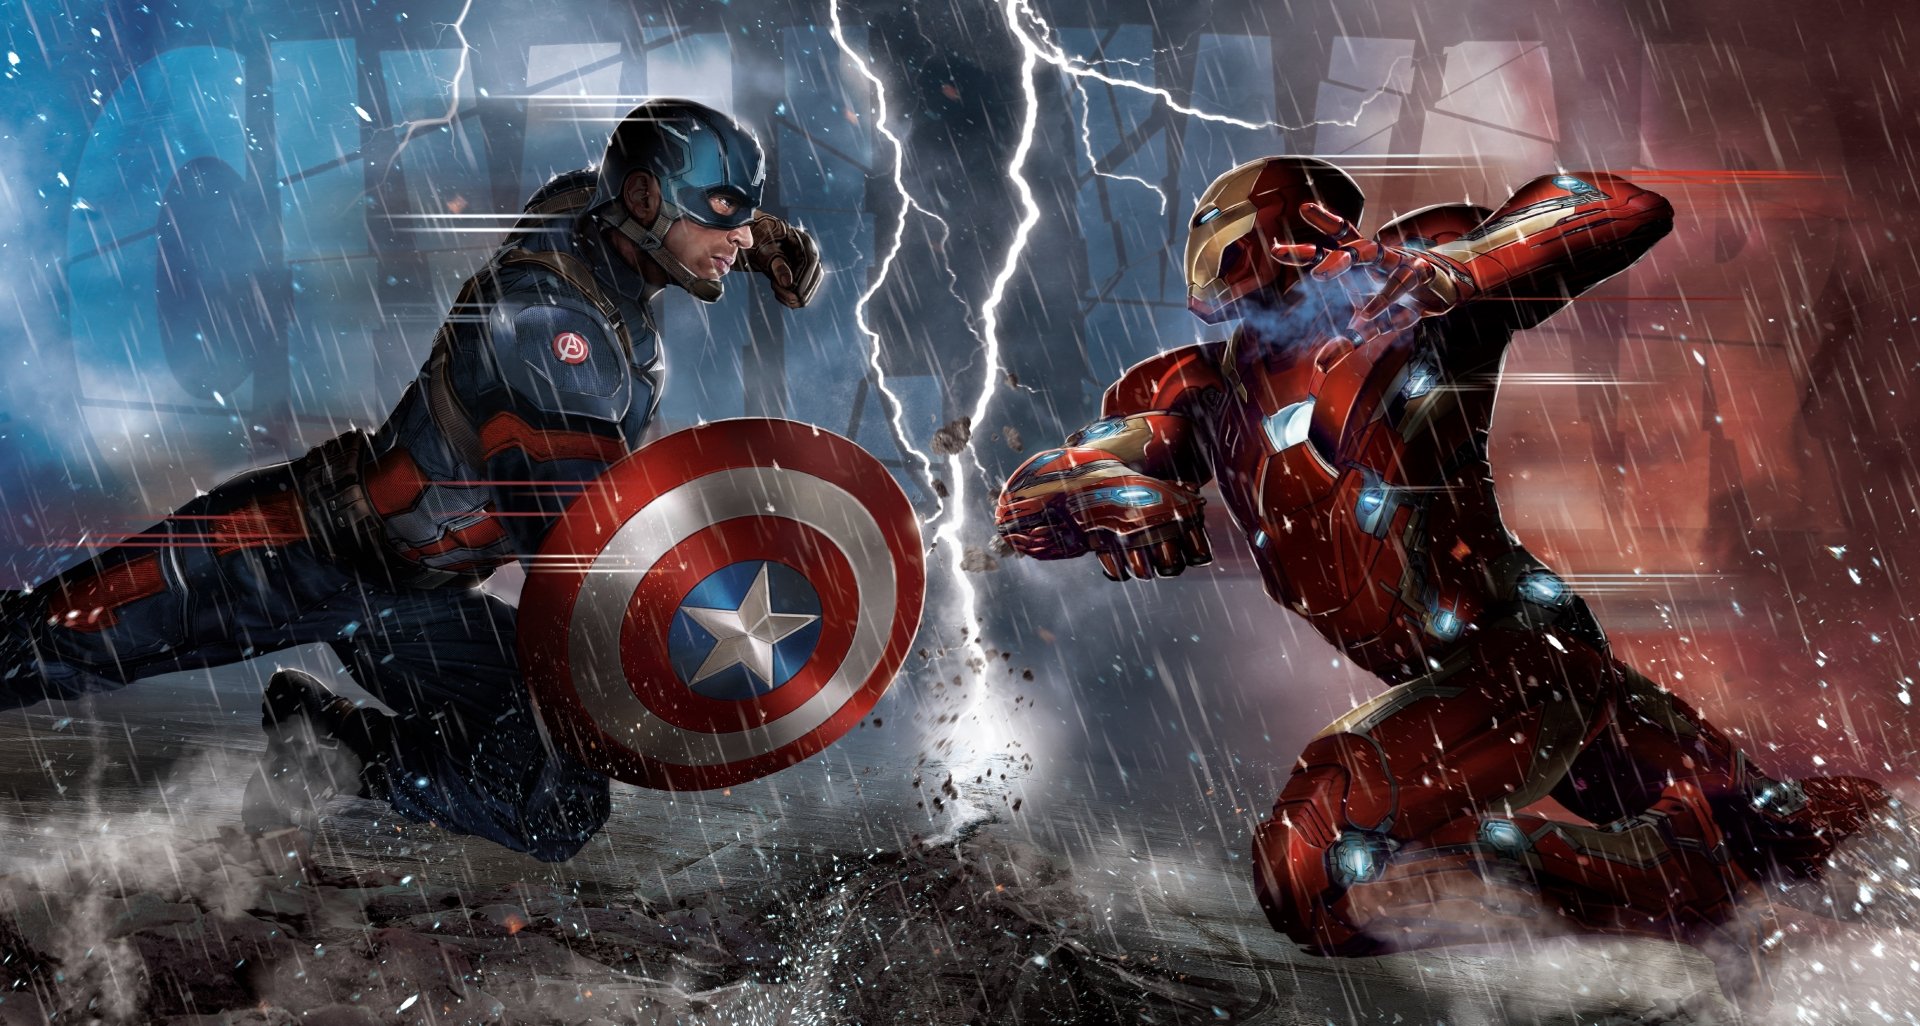 Endgame Captain America Thor Hammer Lightning 4k  Captain America  With Hammer Endgame  1440x3040 Wallpaper  teahubio